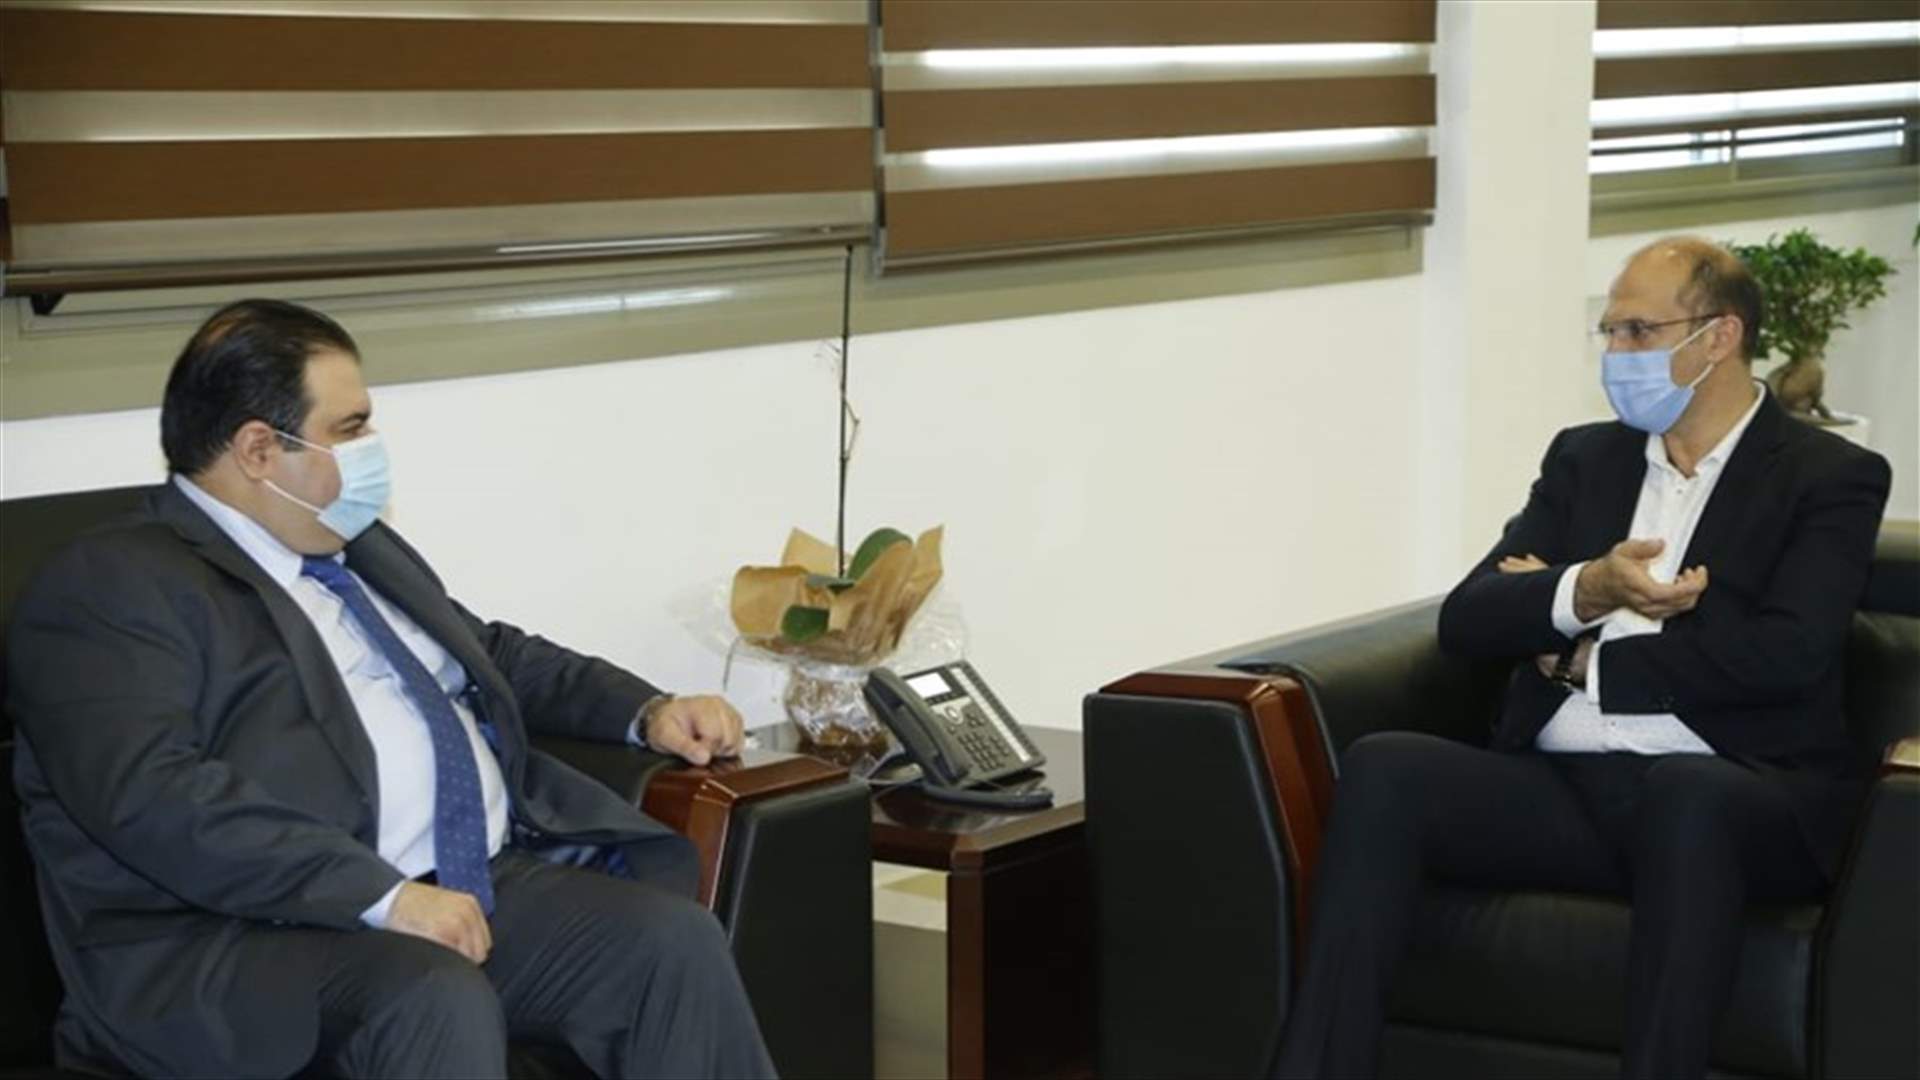 وزير الصحة تبلغ قرار الحكومة العراقية إعادة افتتاح الملحقية الصحية في السفارة